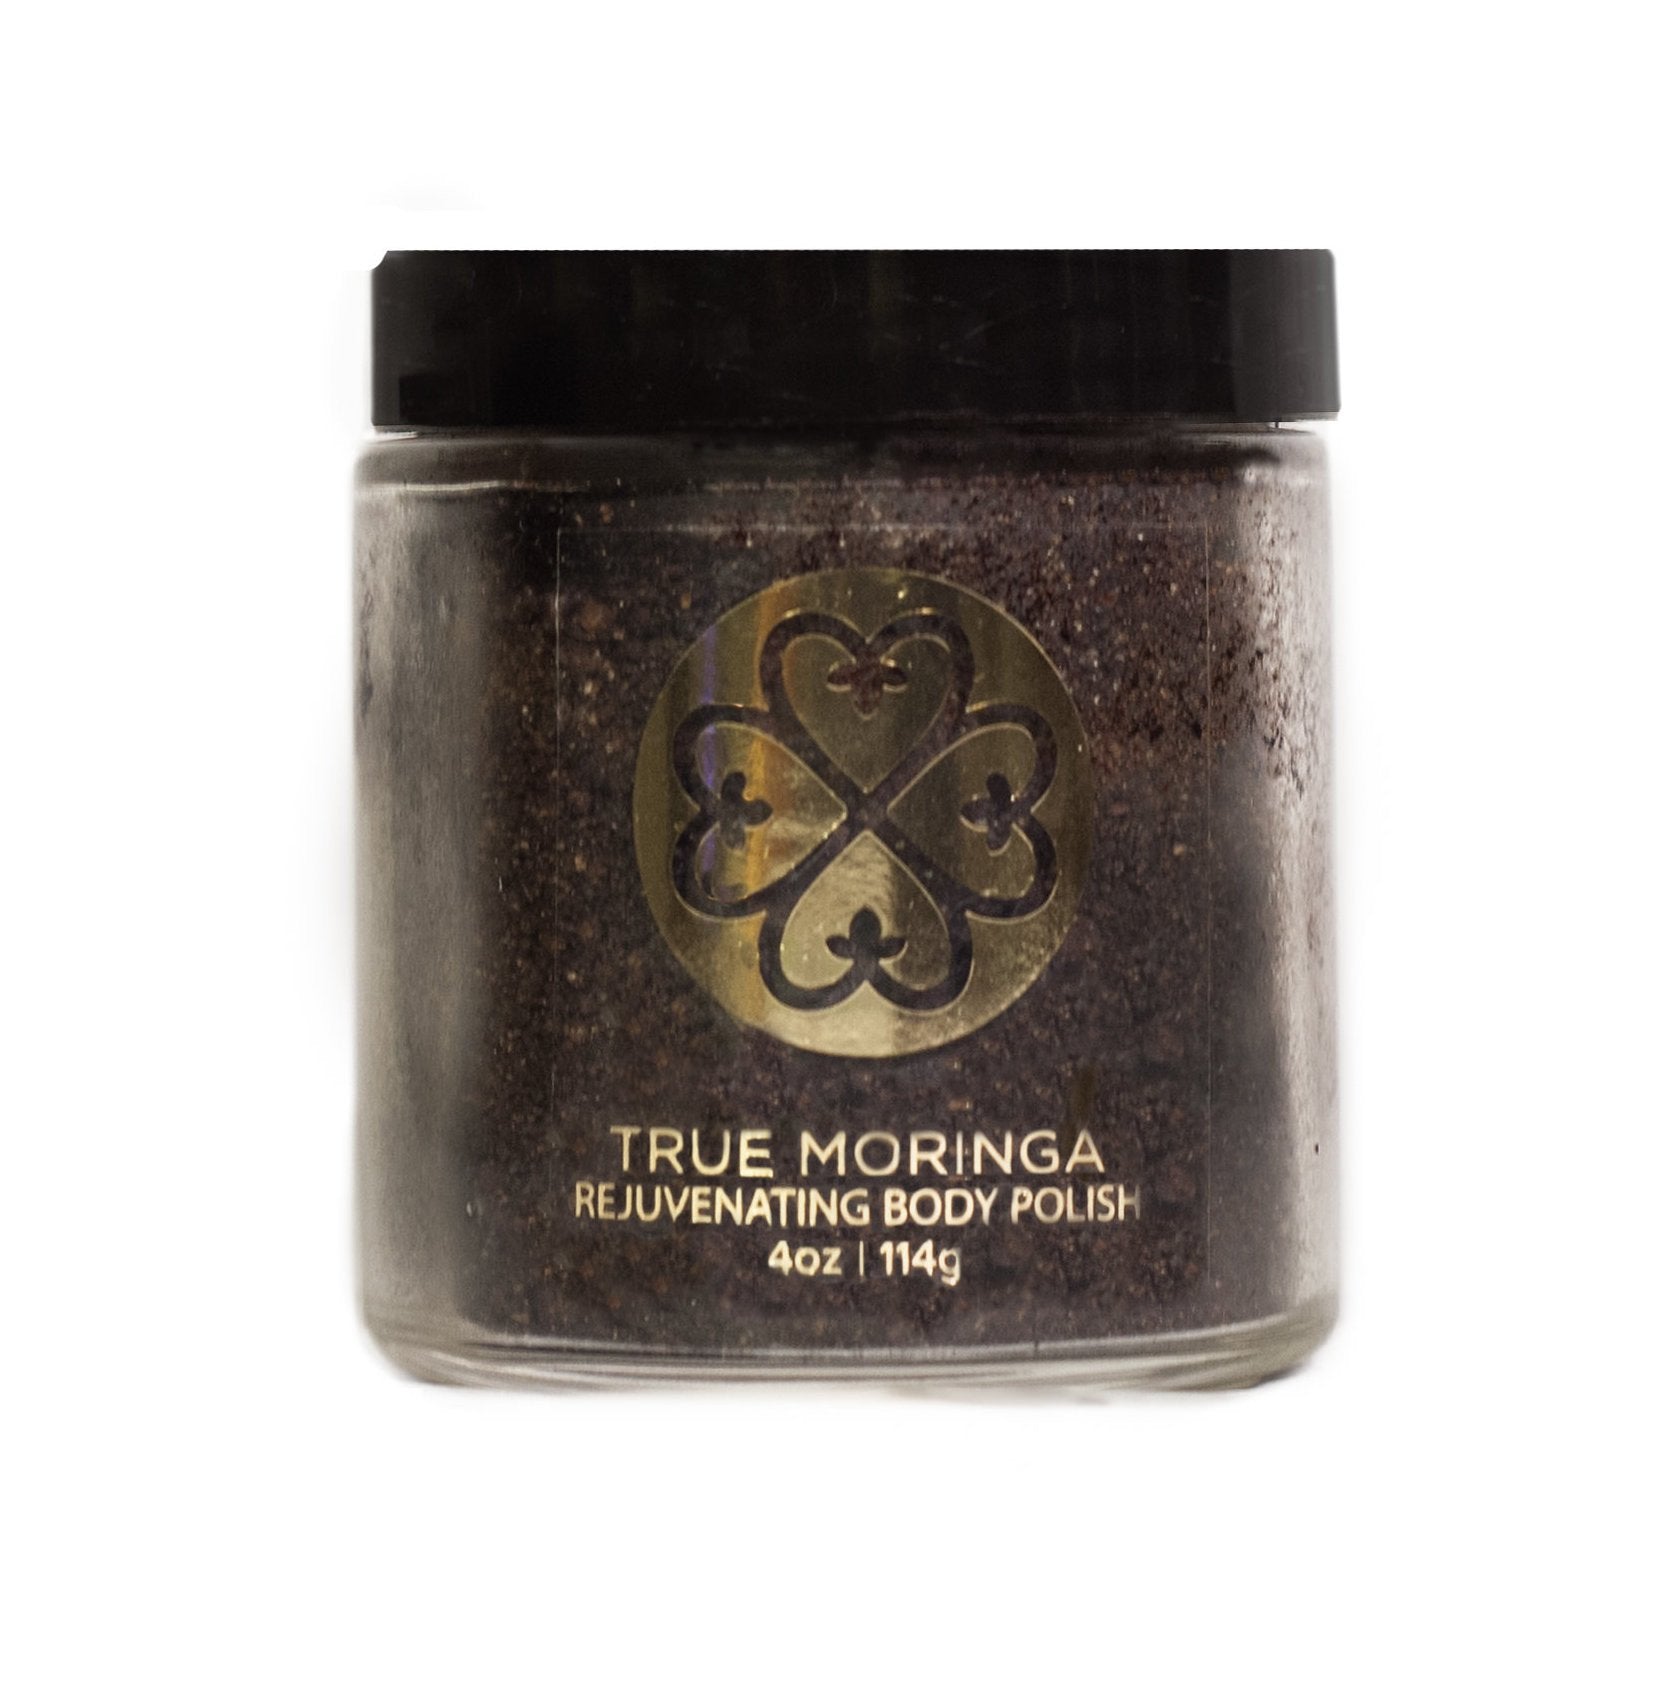 True Moringa Rejuvenating Body Polish - feelgreat.co